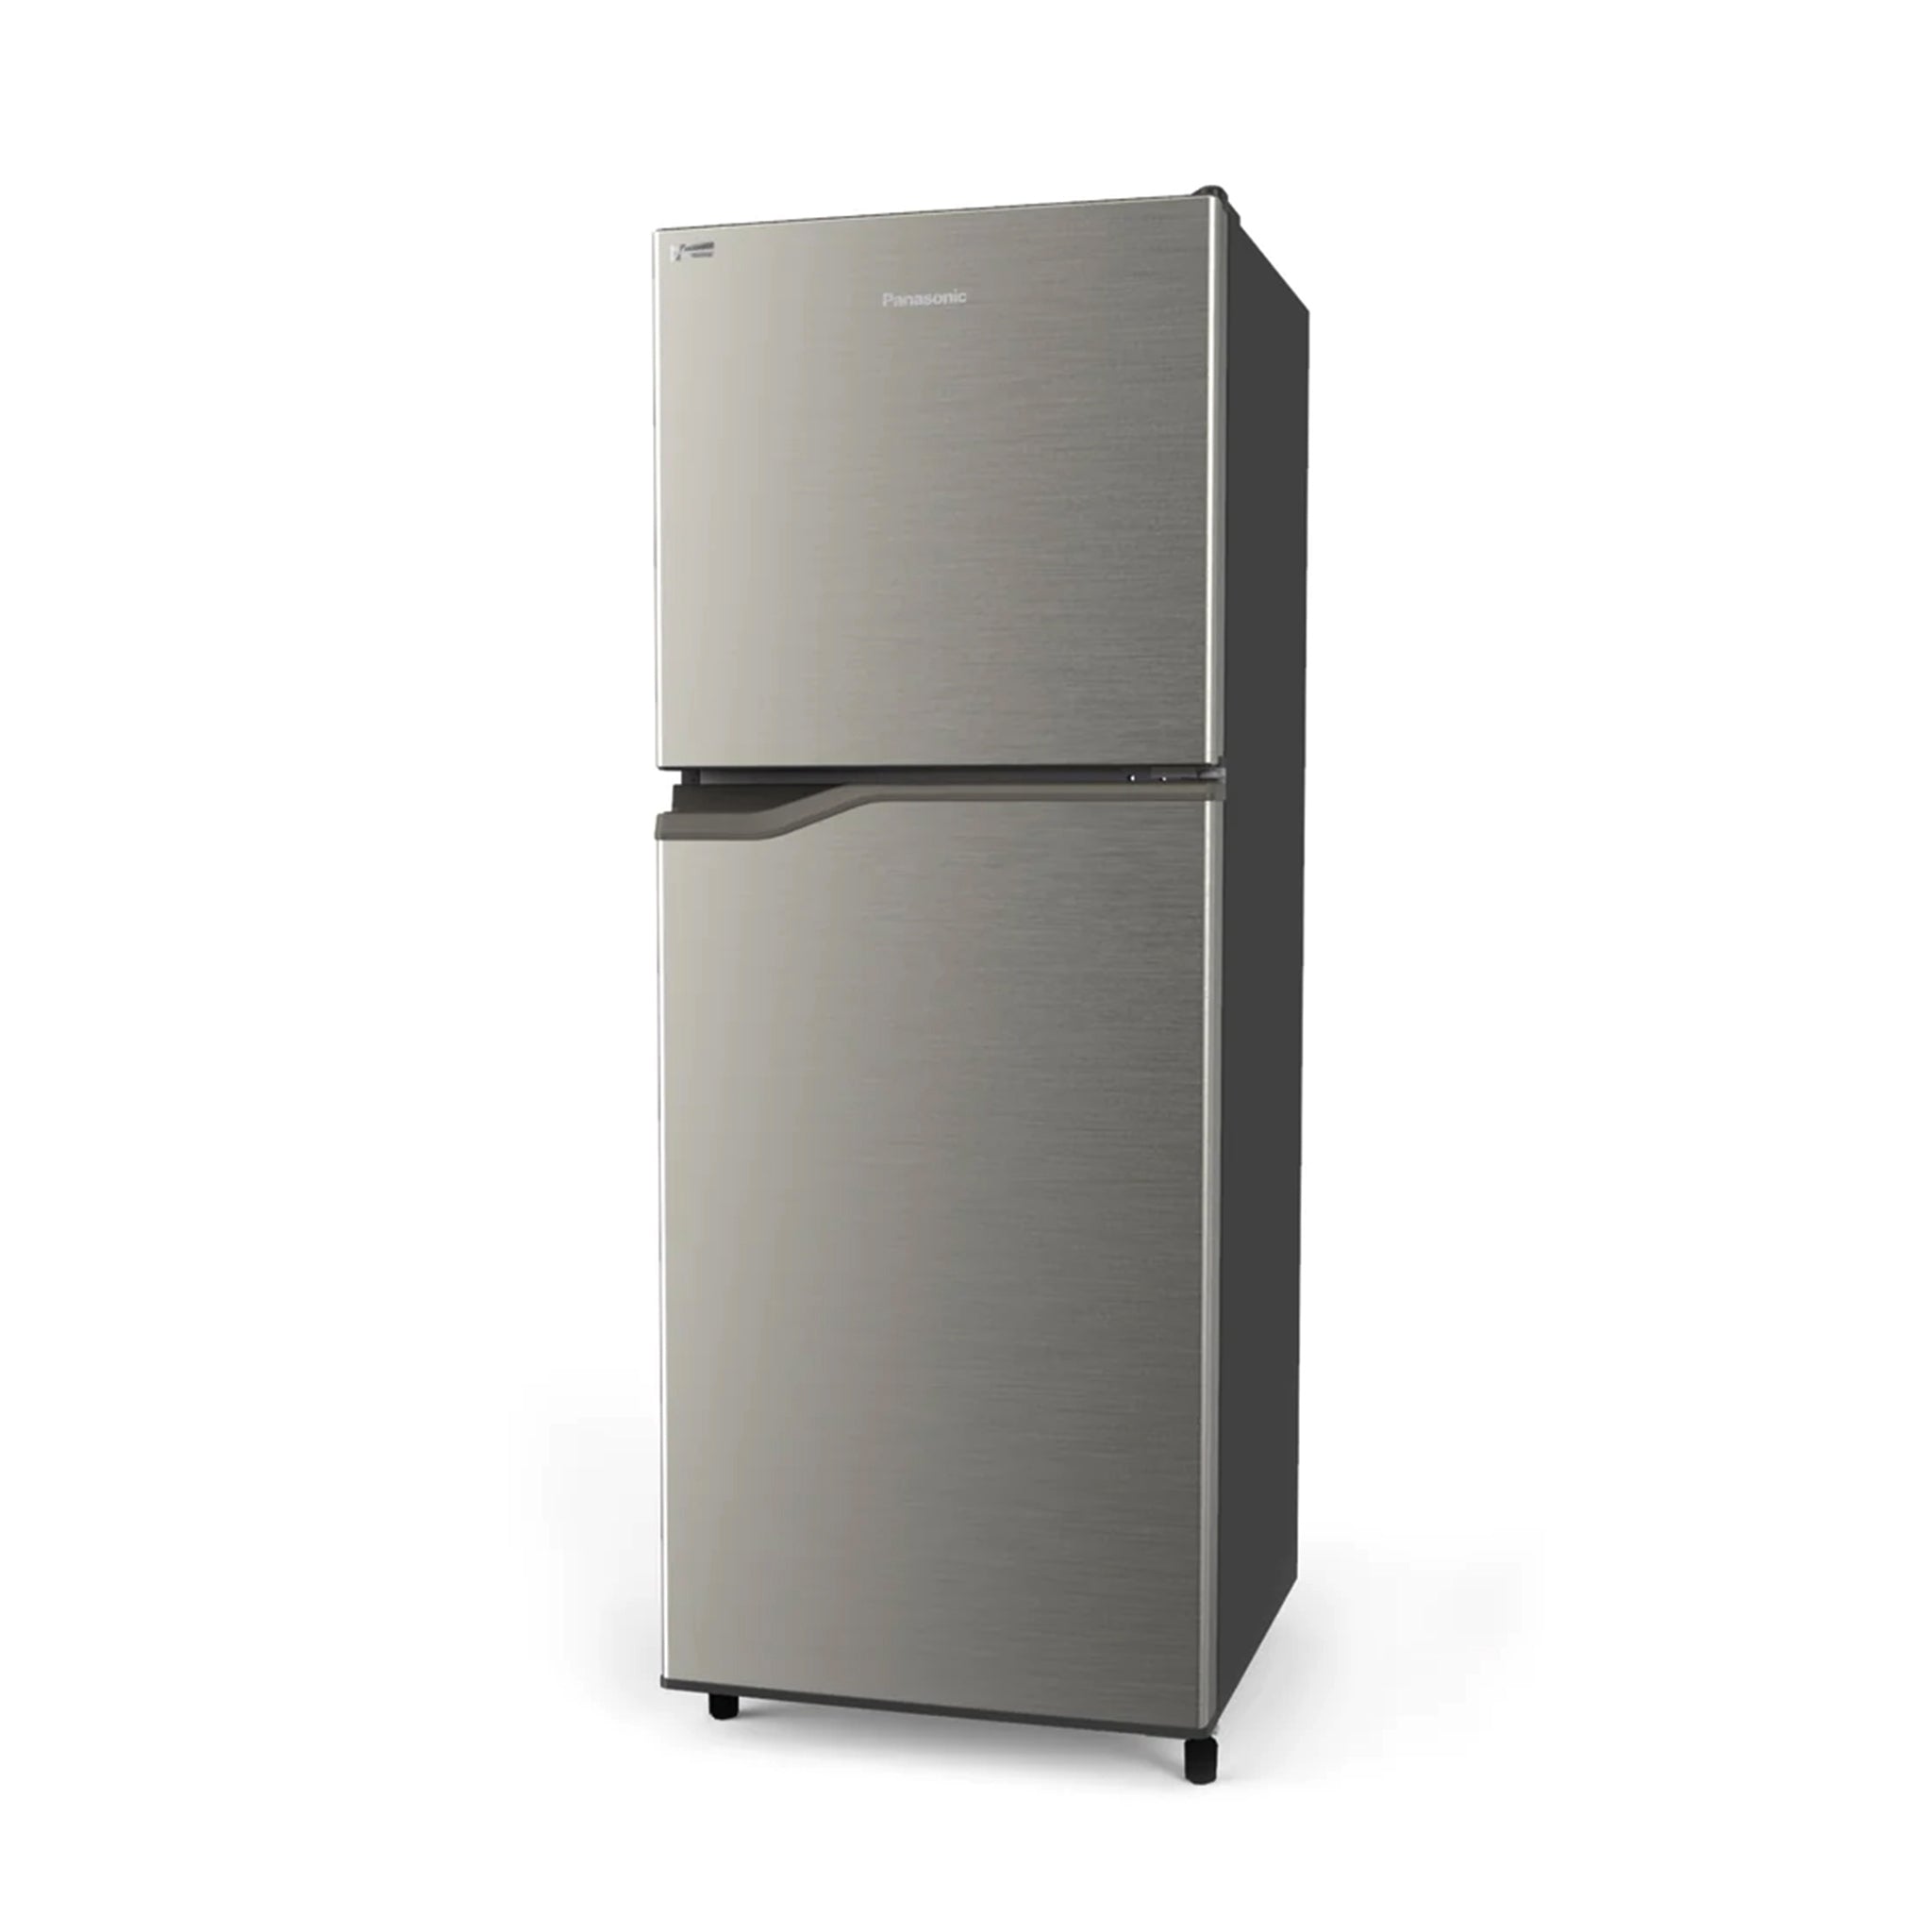 PANASONIC NR-BP280VS 2-Door Top Freezer Fridge No Frost Inverter Refrigerator Panasonic